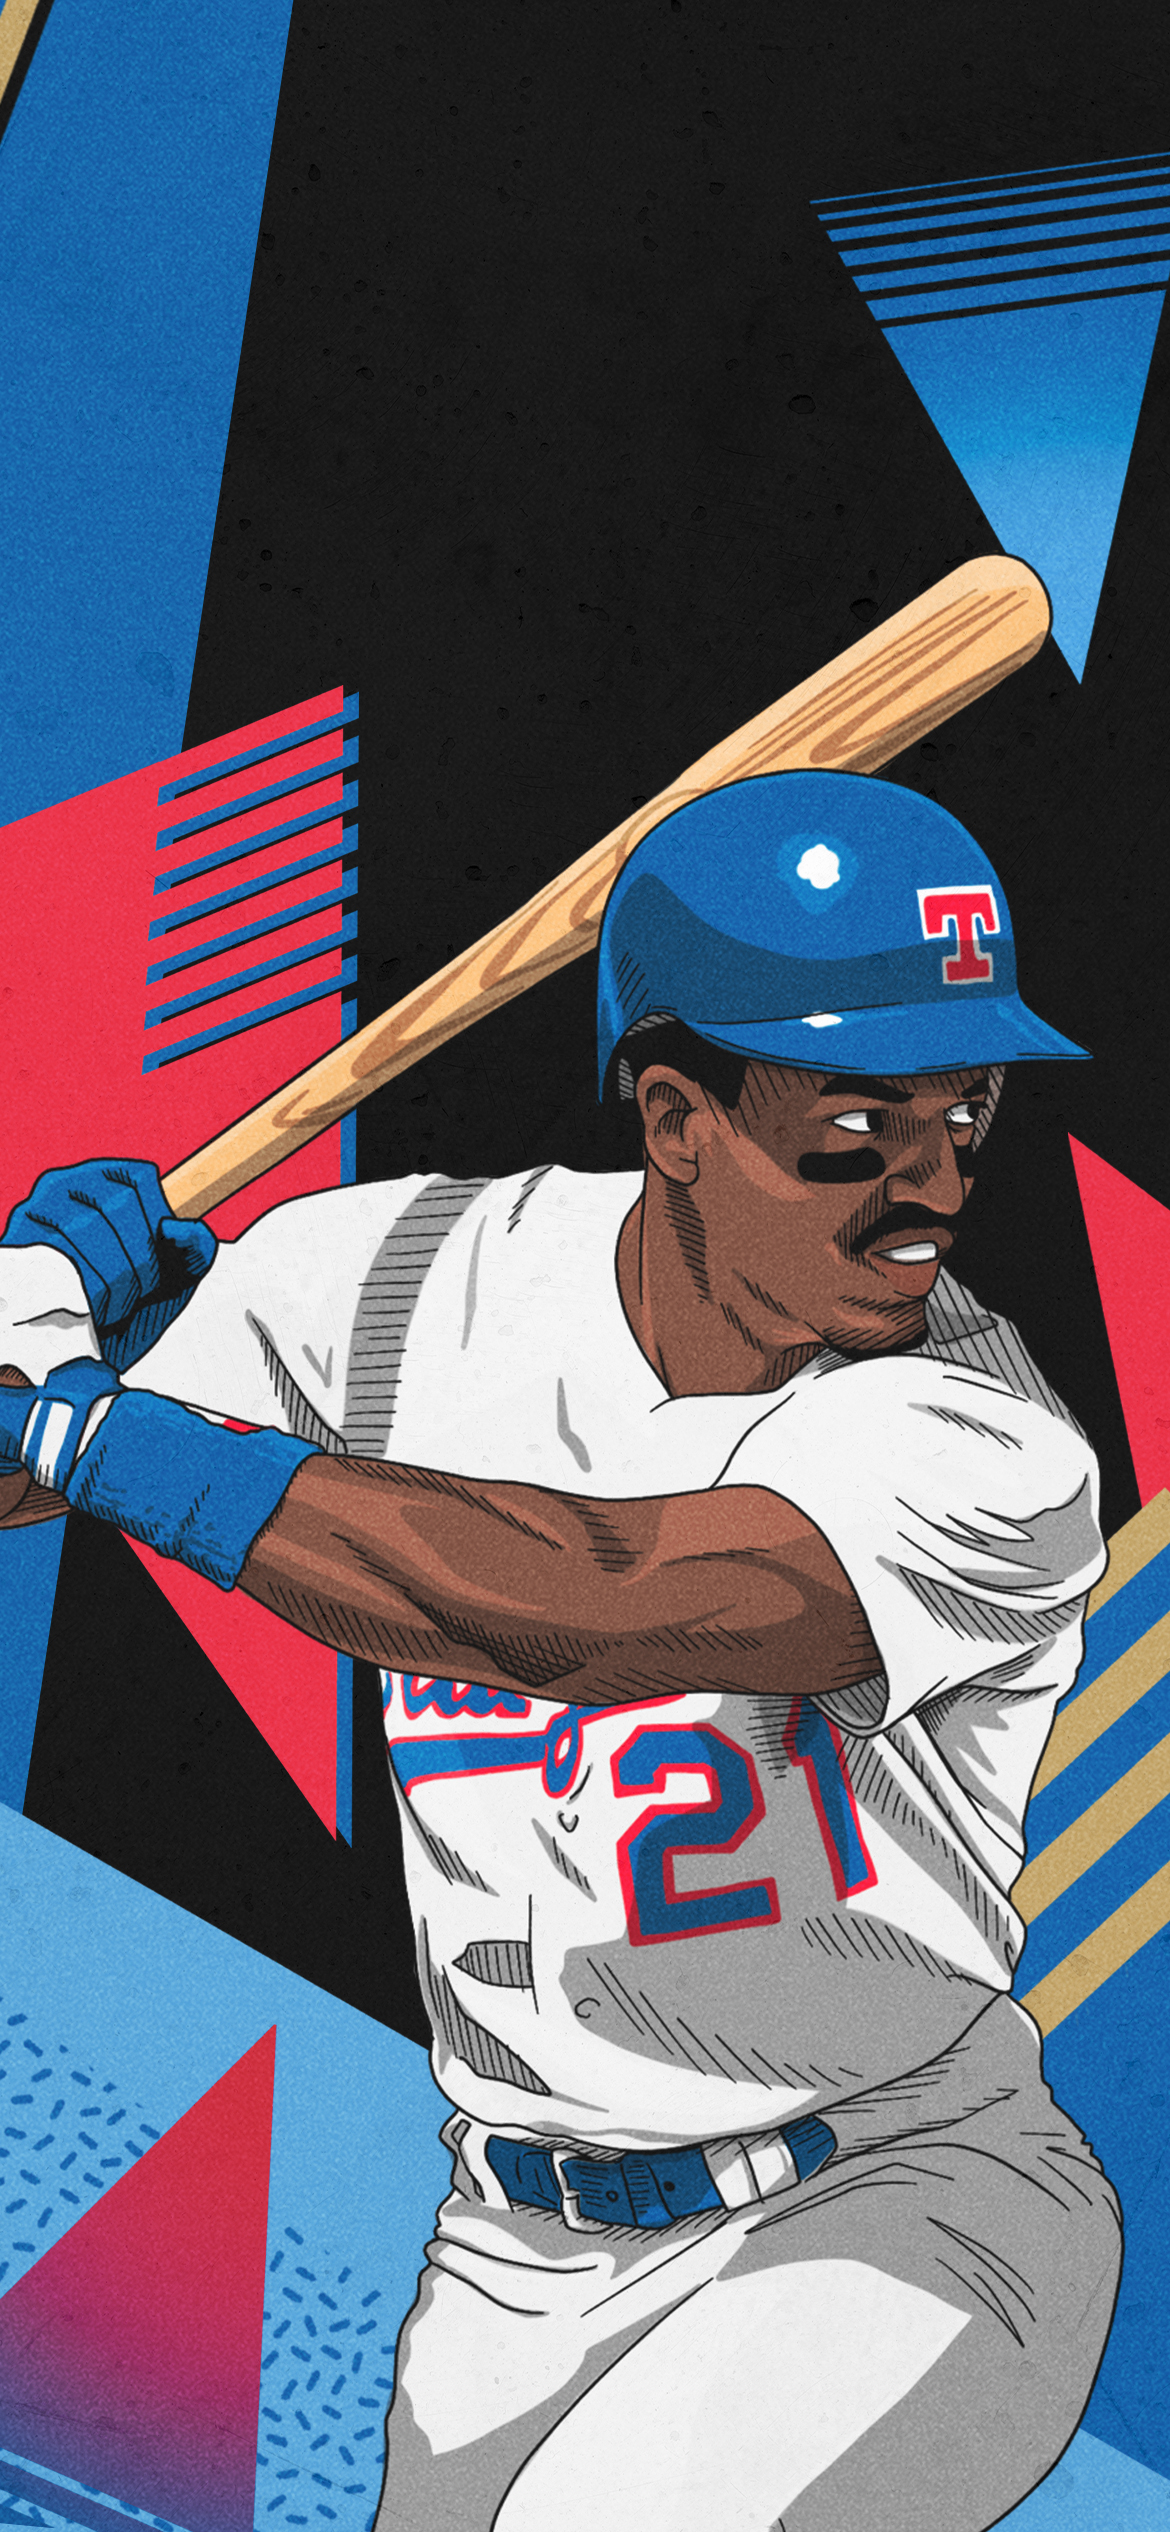 David Clyde Jersey - 1974 Texas Rangers Cooperstown Home Baseball